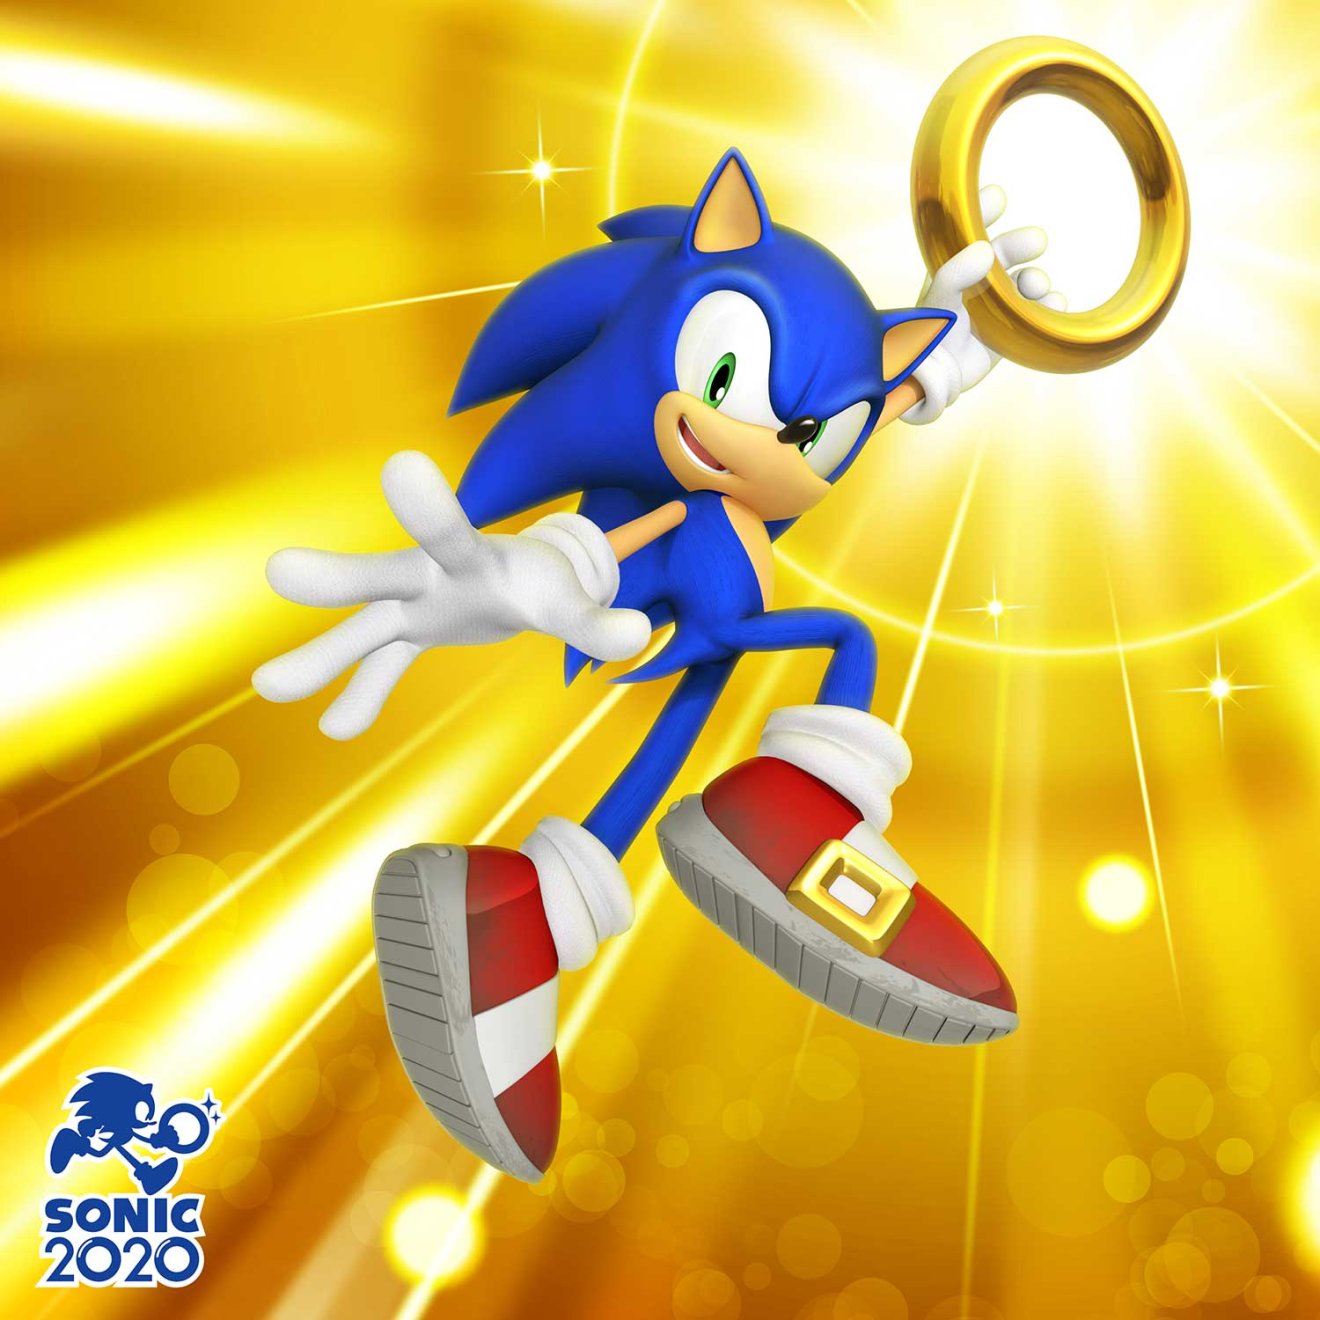 Sega เปิดตัวโพรเจกต์ Sonic 2020 พร้อมปล่อยข้อมูลทุกวันที่ 20 ของทุกเดือน ตลอดปี 2020